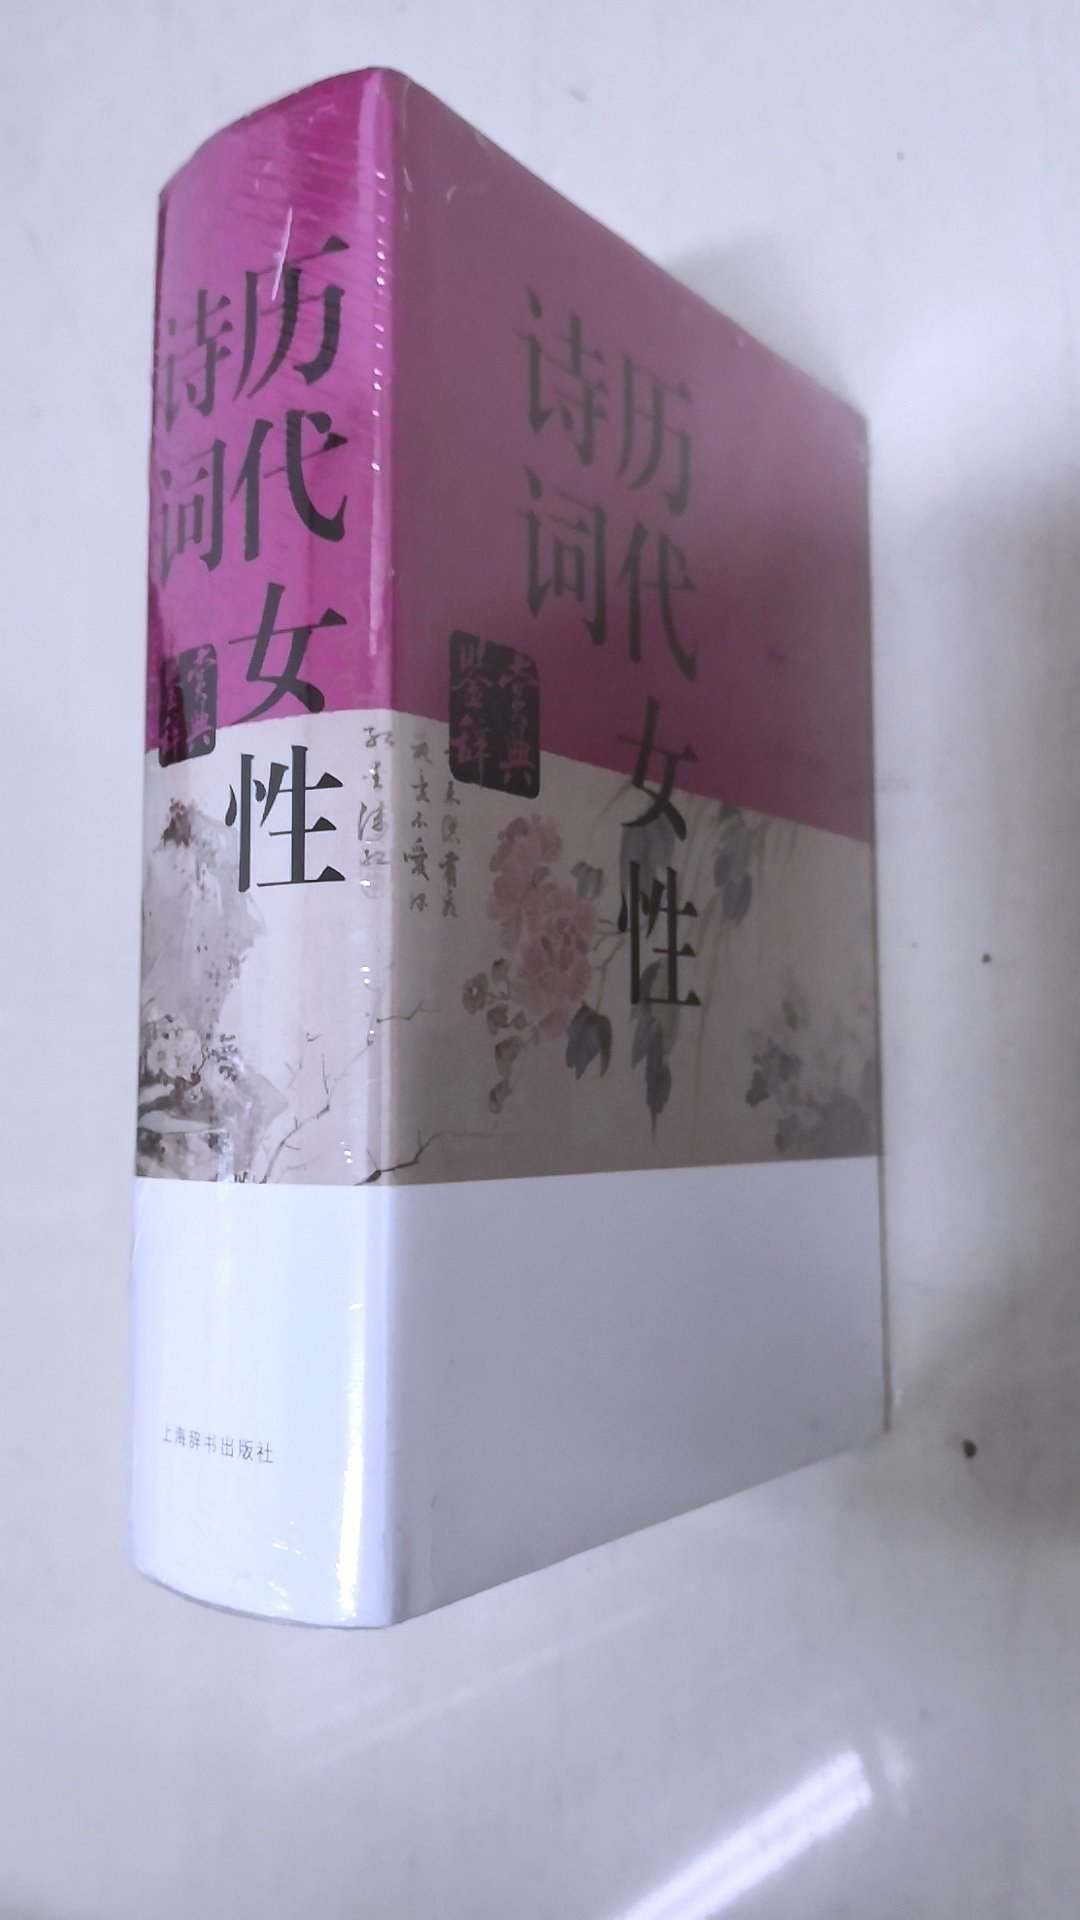 上海辞书出版社，值得信赖，值得购买，图书价格优惠，邮寄速度快。上海辞书文学鉴赏辞典这套书是人类数干年文化结晶，一版装帧精美，使人赏心悦目;字体大，便于阅读，值得推荐。